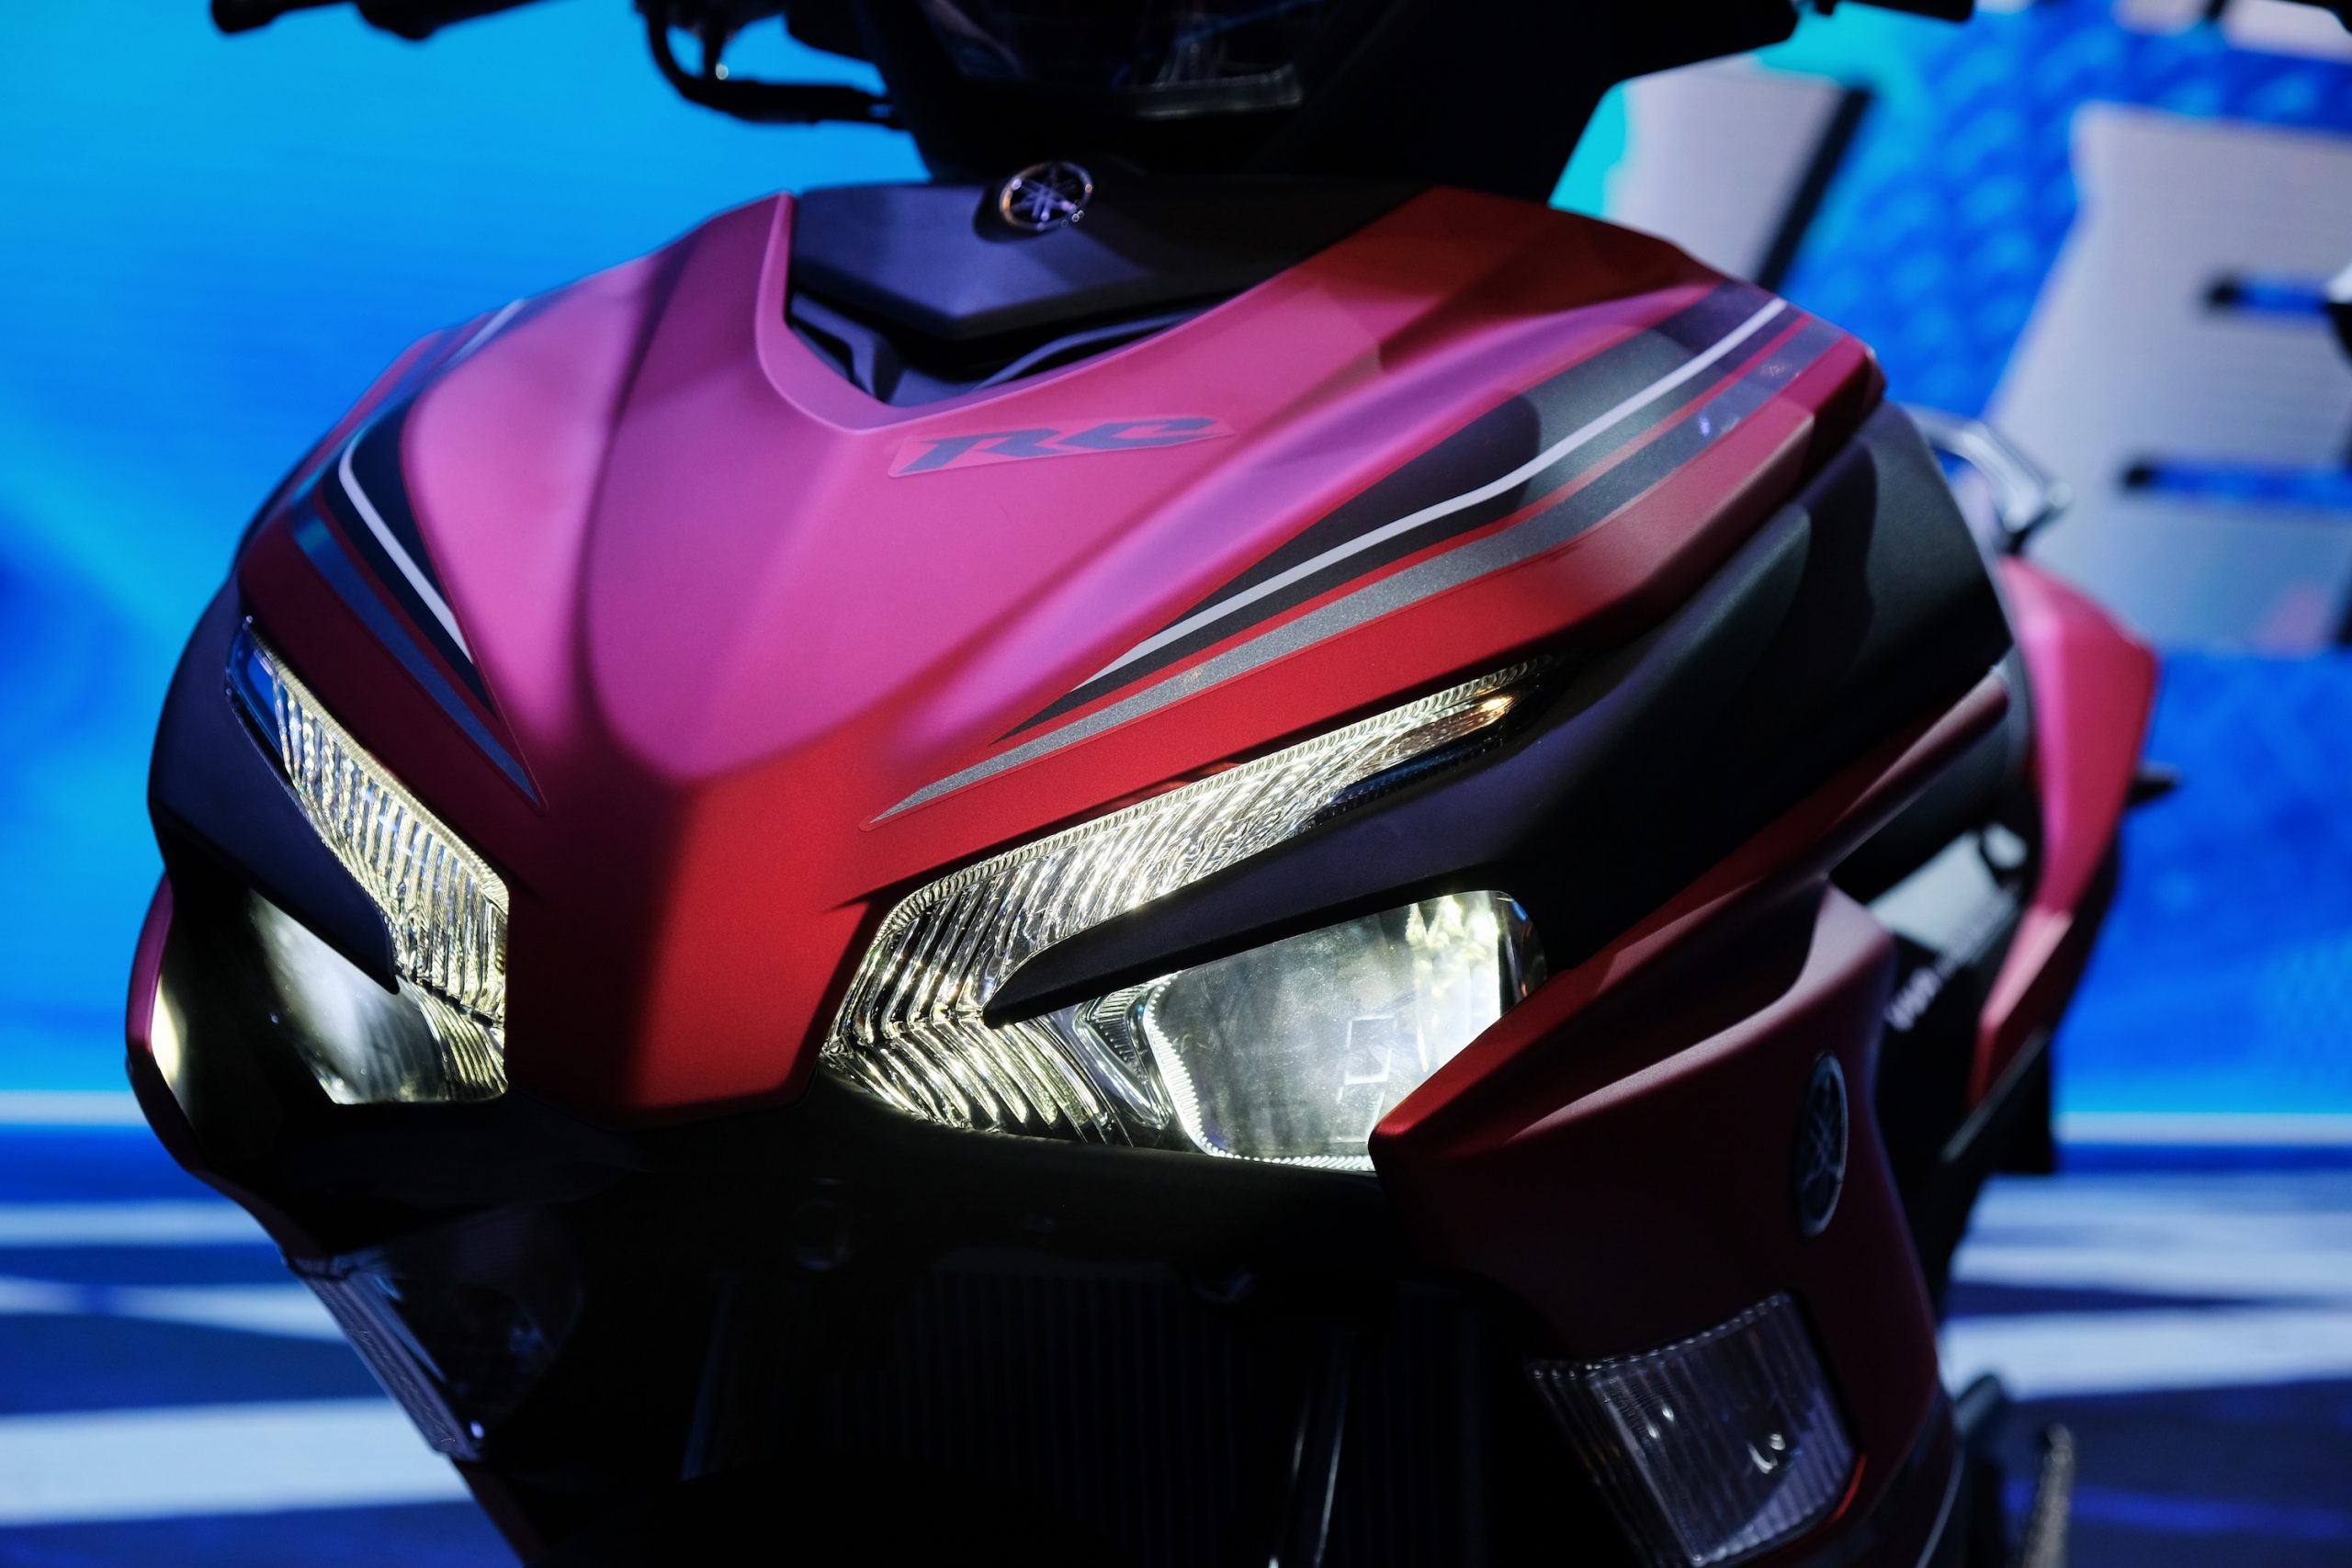 Yamaha Exciter 155 đời mới chỉ từ 47 triệu: Thiết kế ‘ăn đứt’ Honda Winner X, trang bị cực ngon ảnh 3